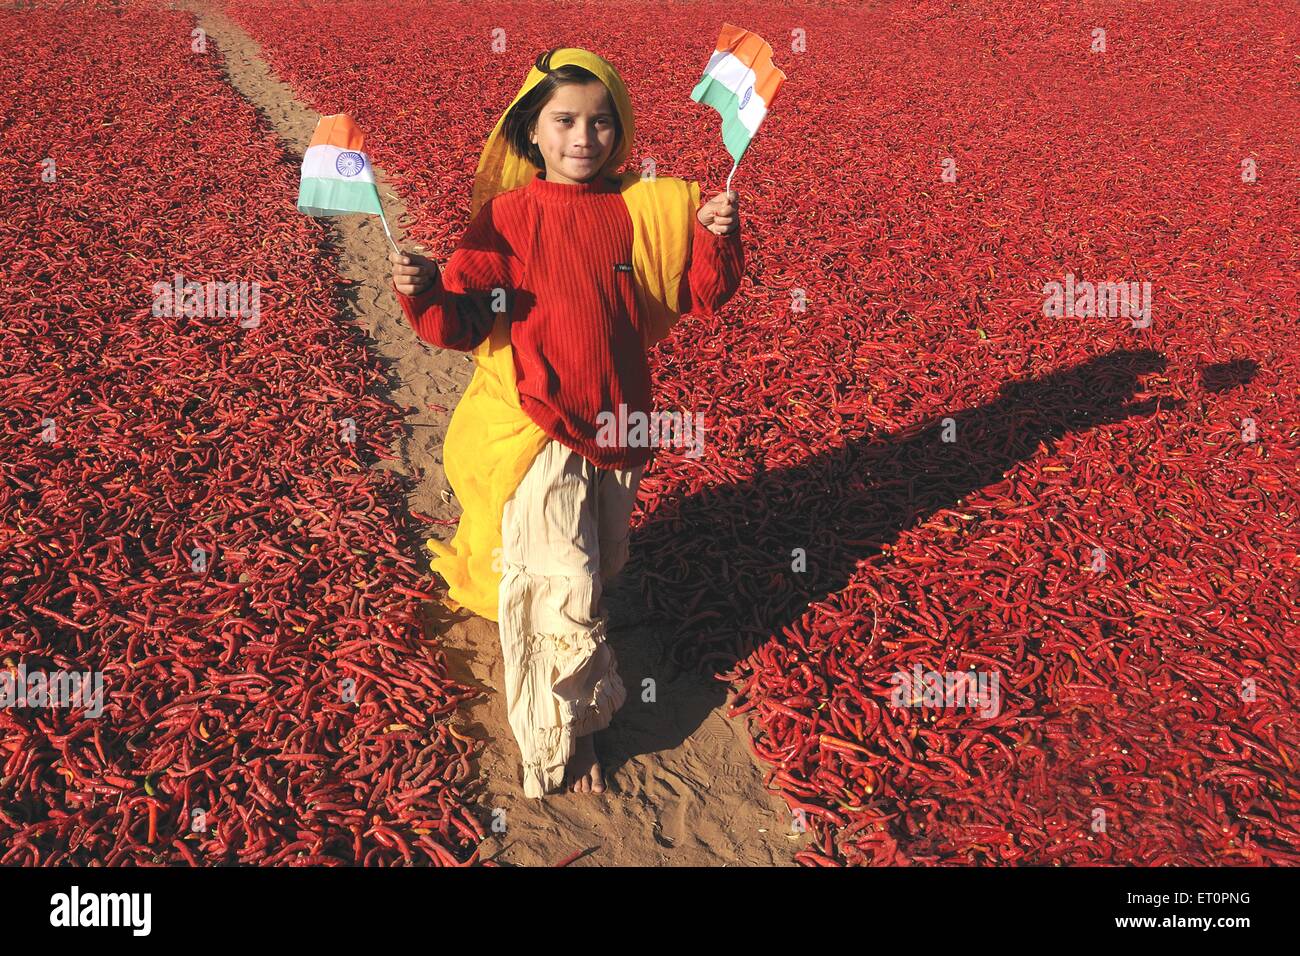 Mädchen mit nationalen Flagge zu Fuß neben roten Chilischoten; Mathania; Jodhpur; Rajasthan; Indien nicht Herr Stockfoto